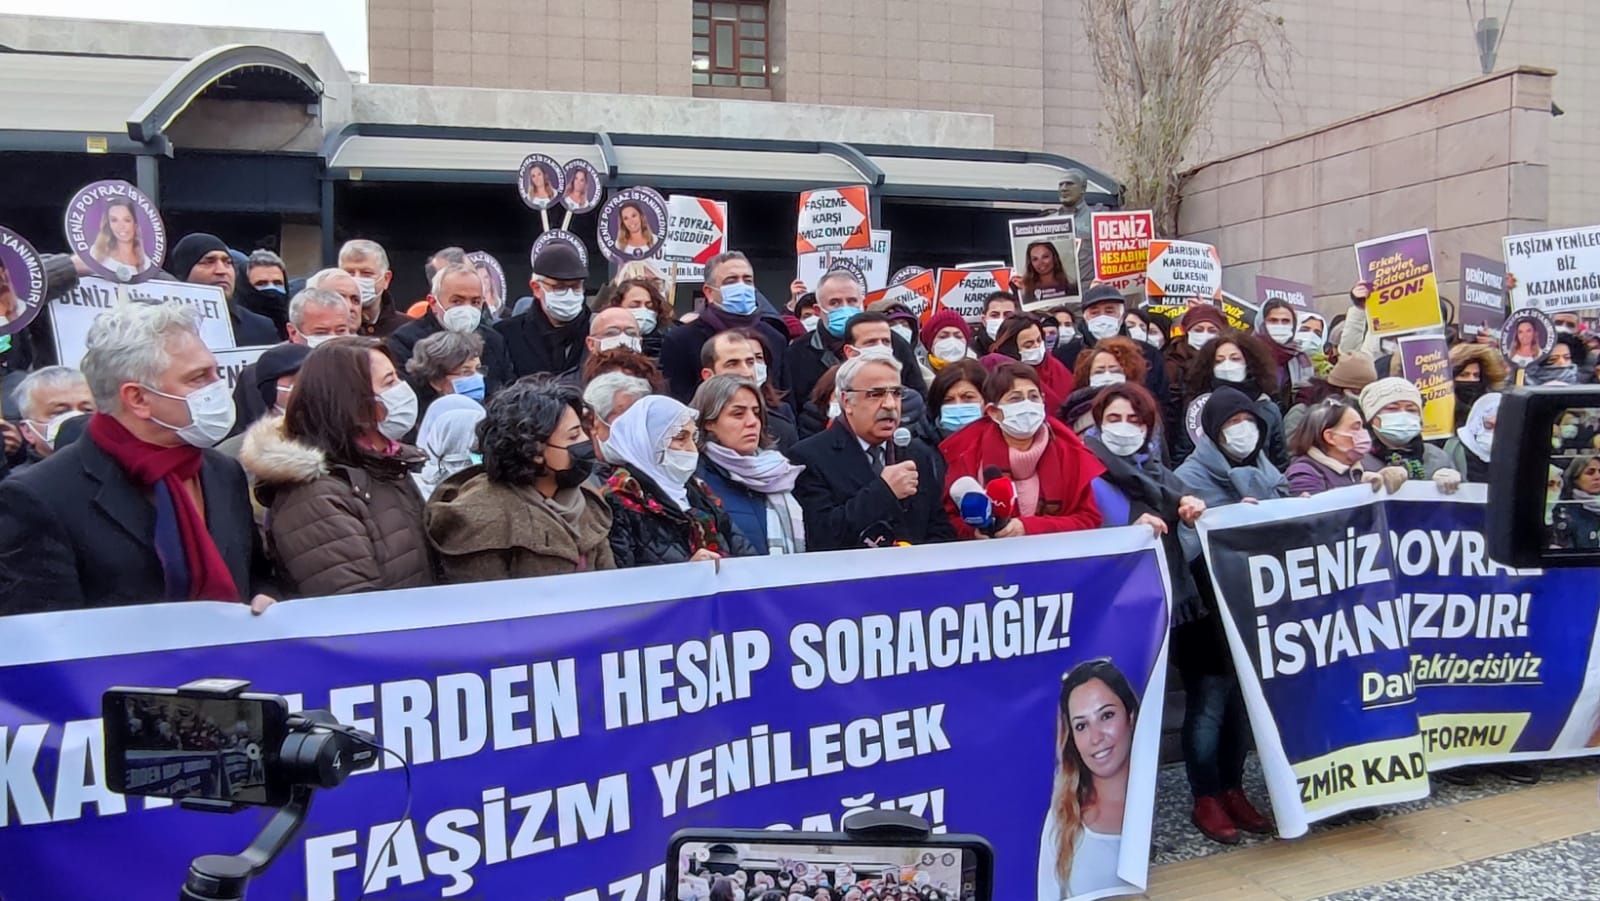 Deniz Poyraz davasında aile ve HDP dışındaki kurumların müdahillik talebi reddedildi | Kaos GL - LGBTİ+ Haber Portalı Haber